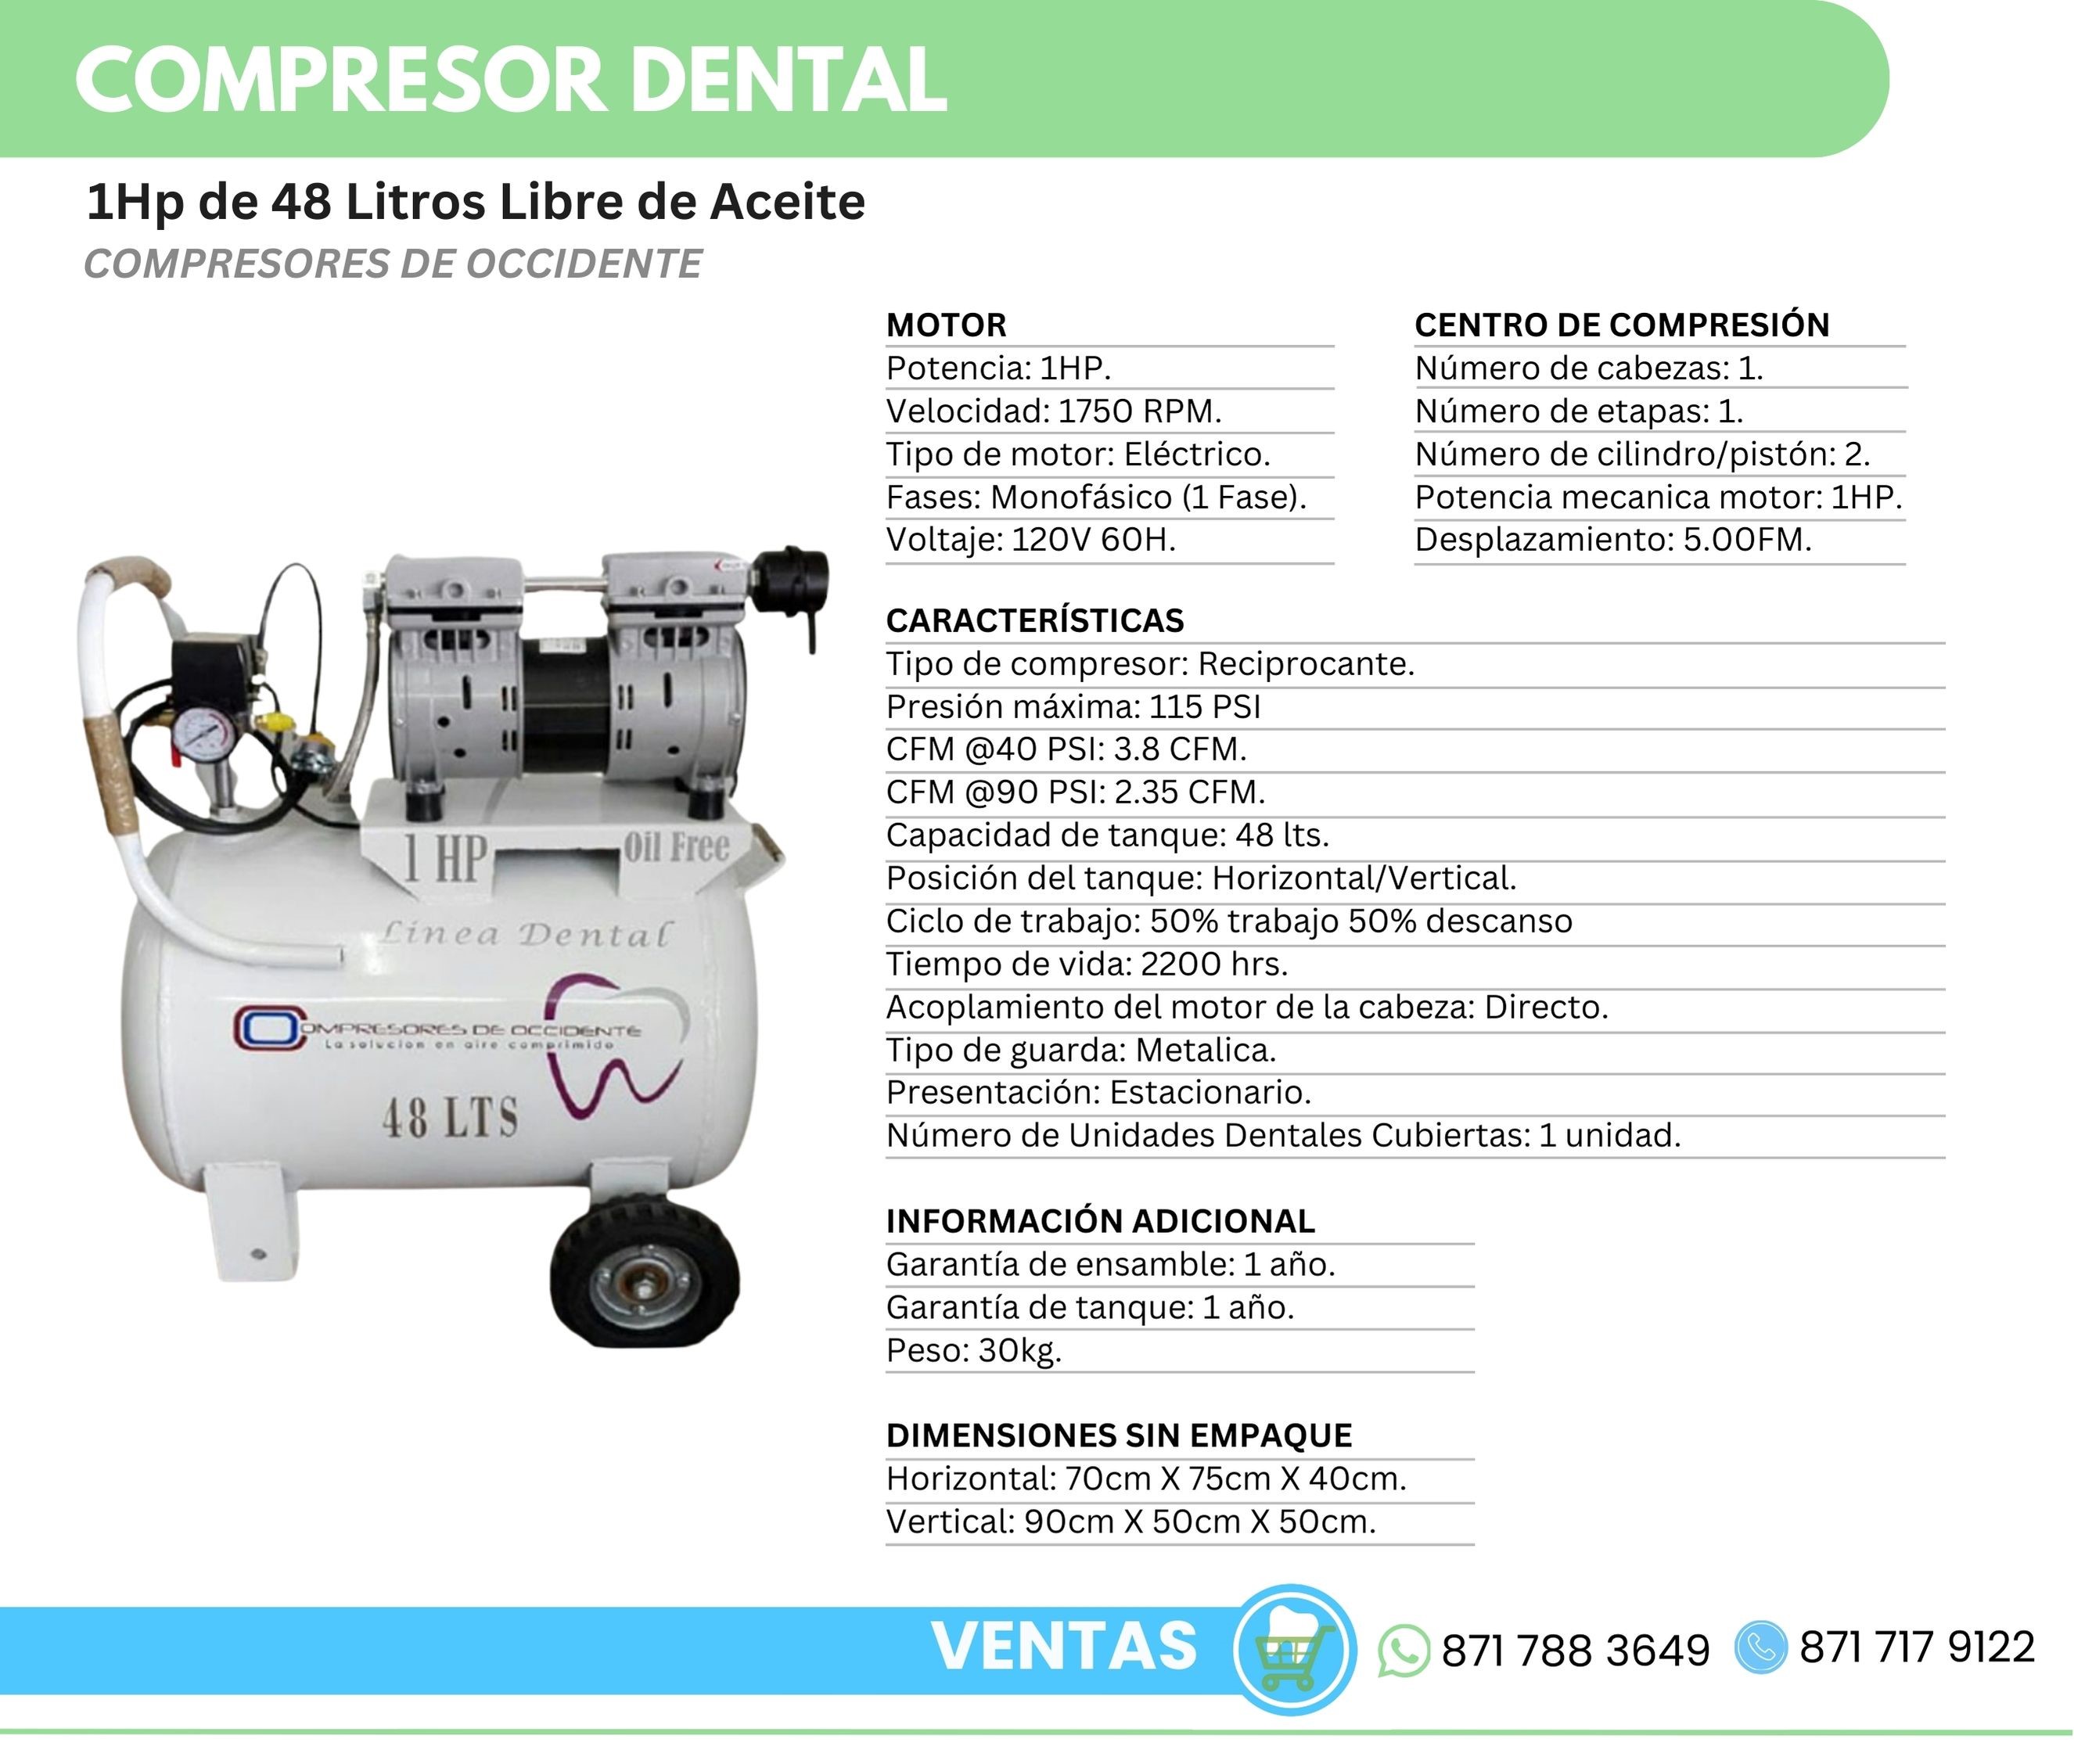 Compresor Dental 1Hp 48 Litros Libre de Aceite Compresores de Occidente Orthosign